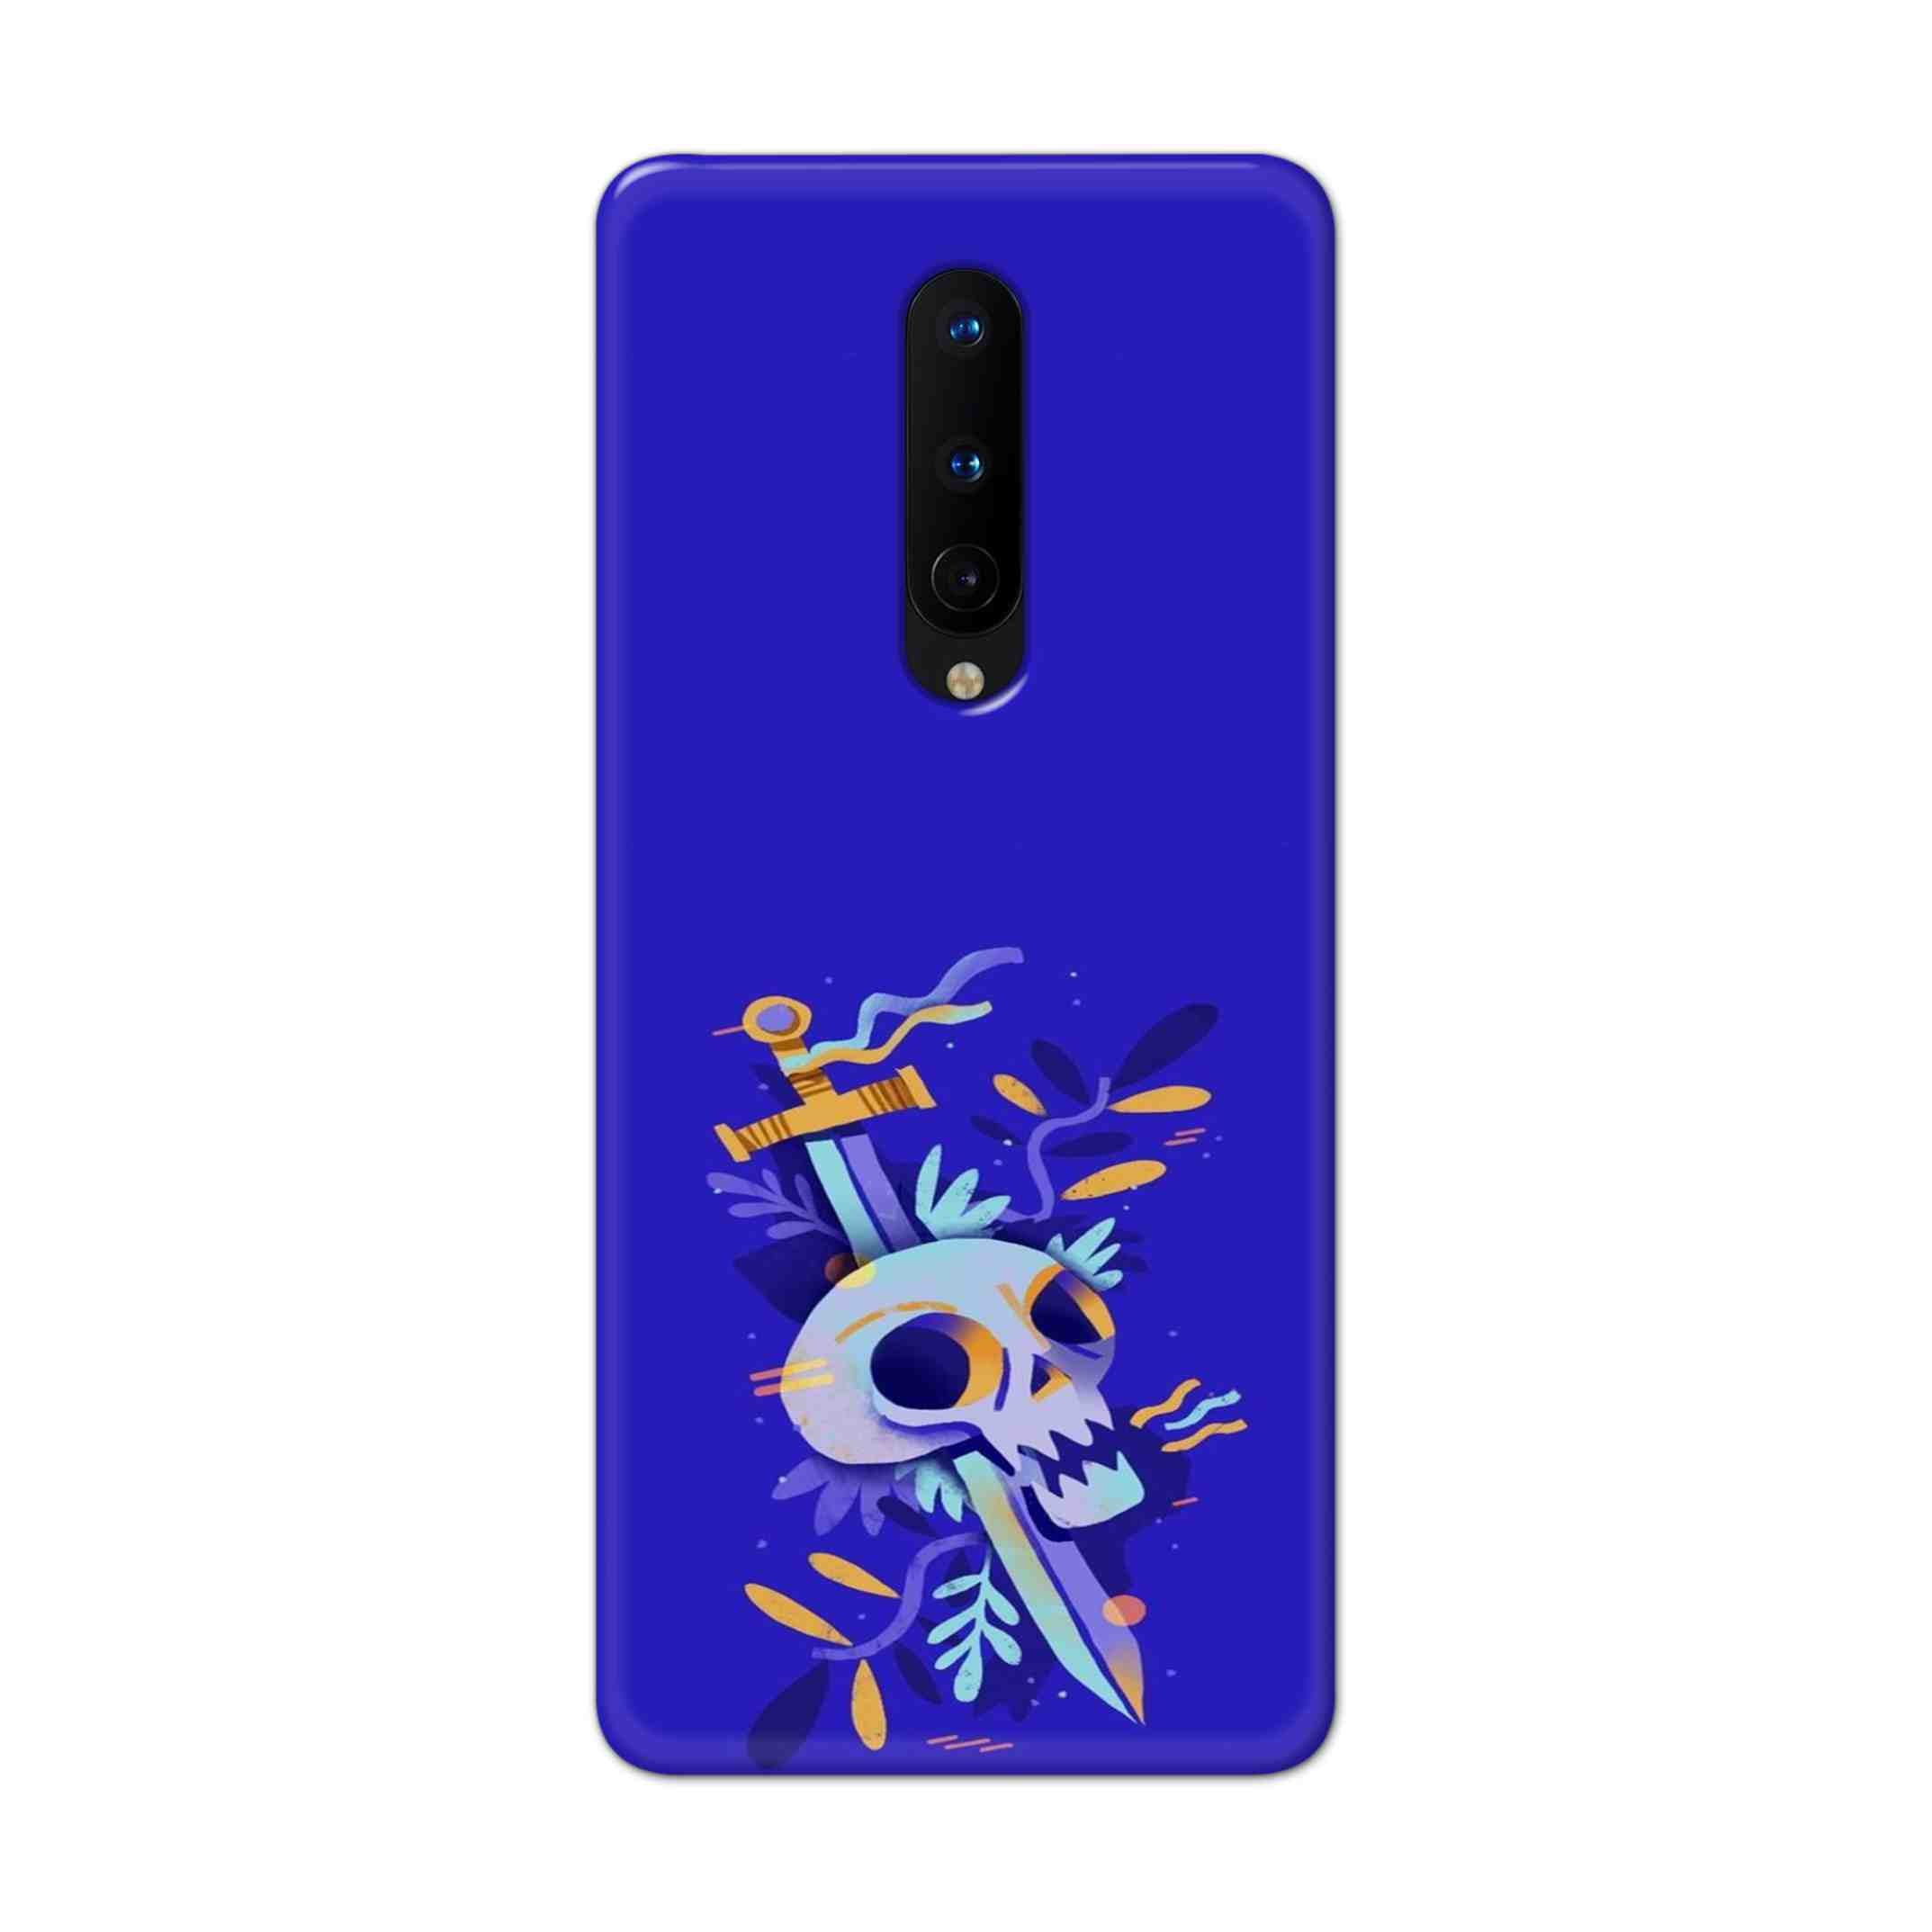 Buy Blue Skull Hard Back Mobile Phone Case Cover For OnePlus 8 Online